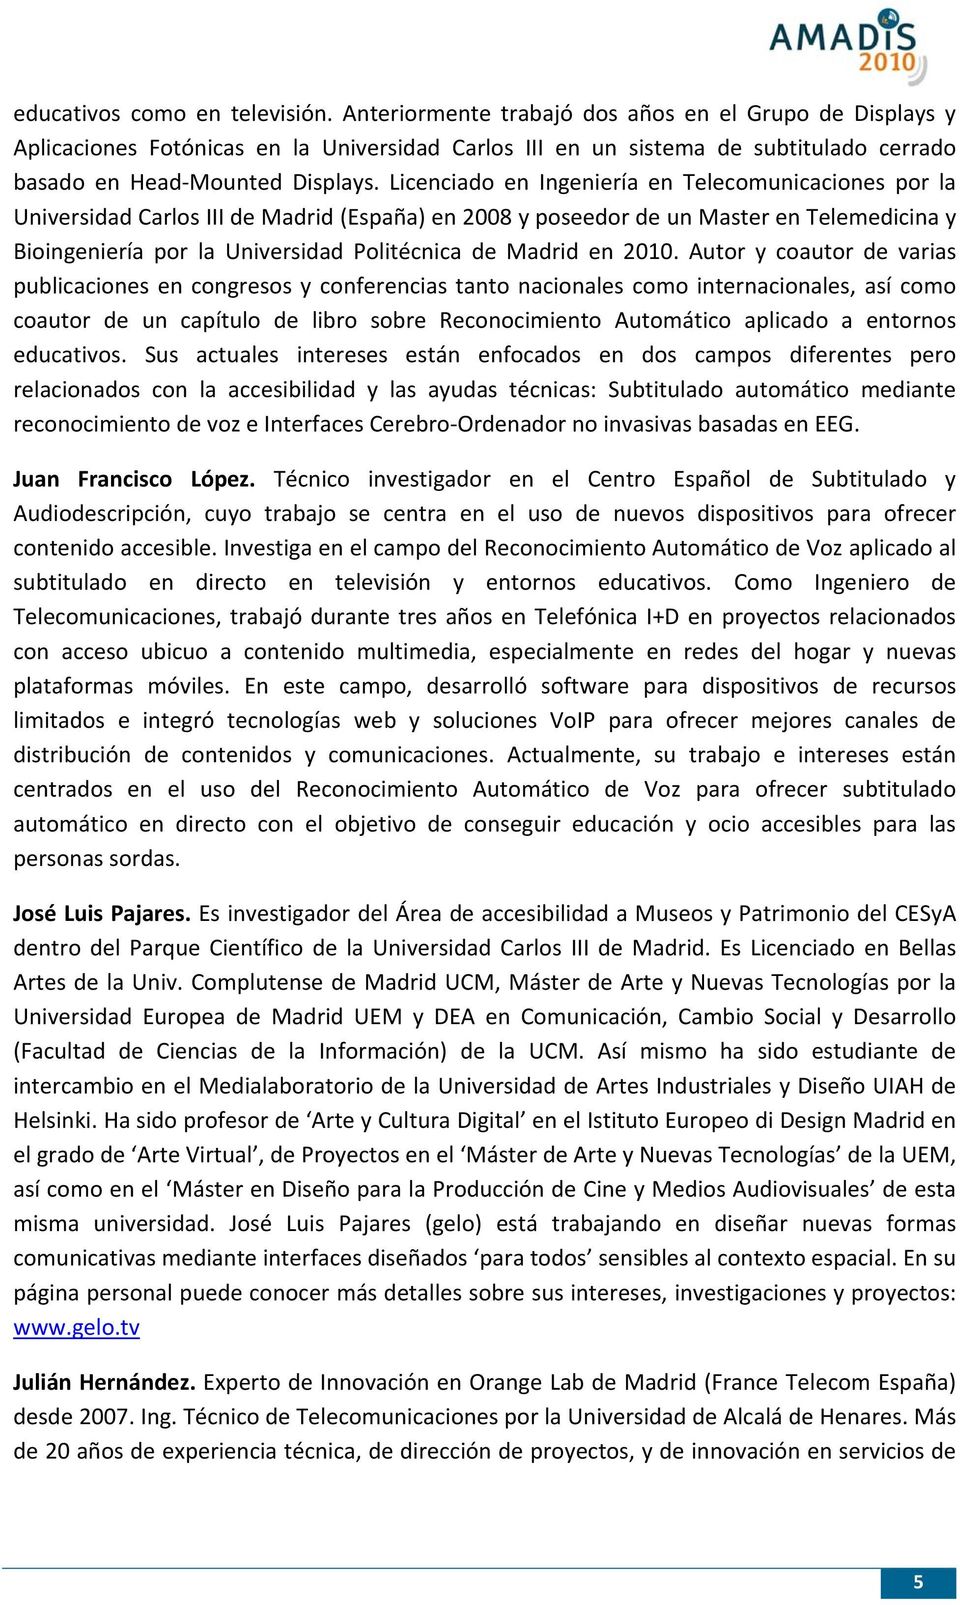 Licenciado en Ingeniería en Telecomunicaciones por la Universidad Carlos III de Madrid (España) en 2008 y poseedor de un Master en Telemedicina y Bioingeniería por la Universidad Politécnica de